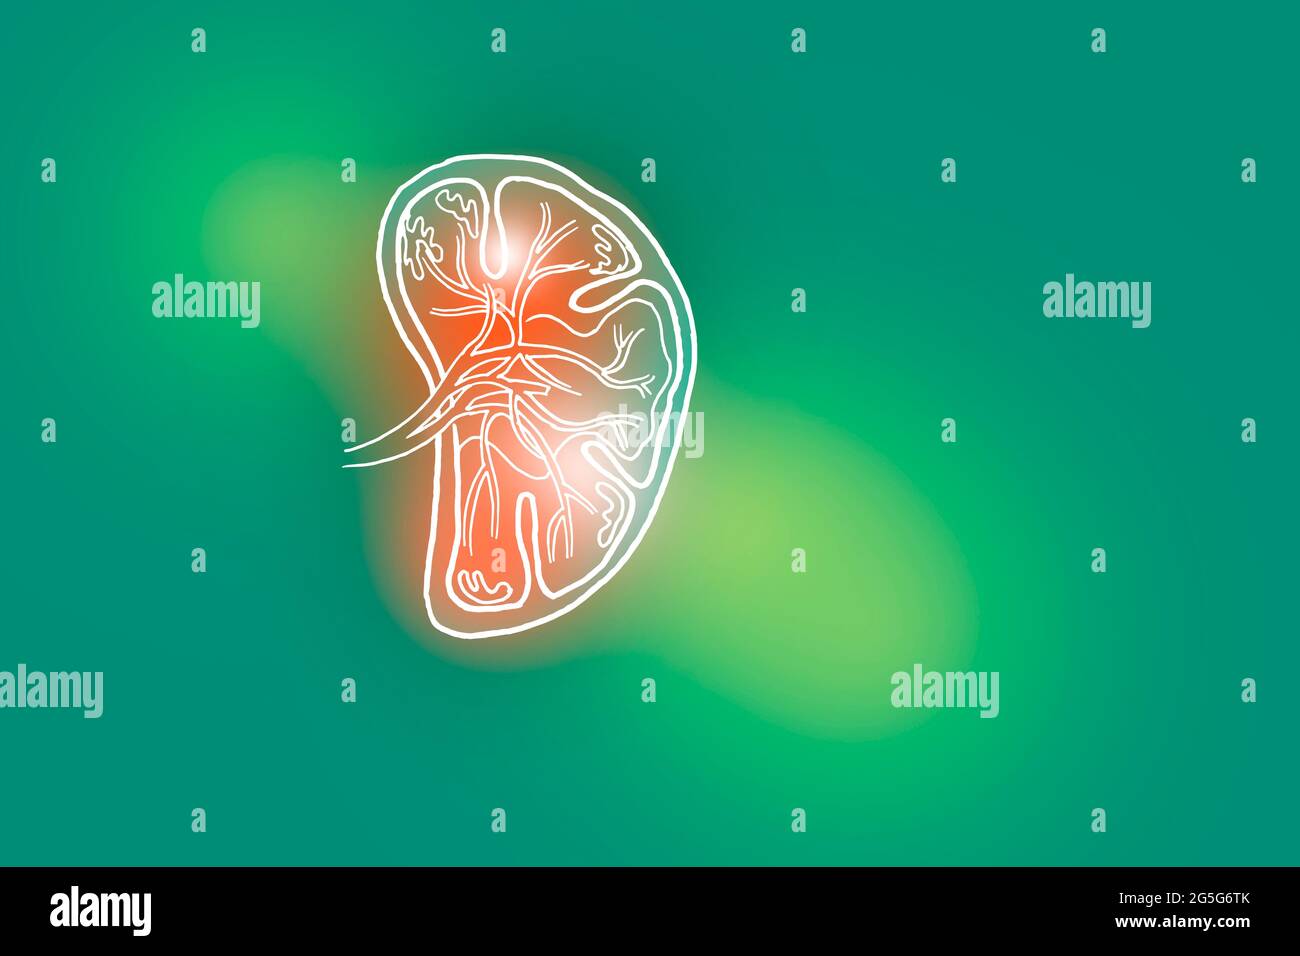 Illustrazione Handrawn della milza umana su sfondo verde chiaro. Set medico-scientifico con i principali organi umani con spazio di copia vuoto per il testo Foto Stock